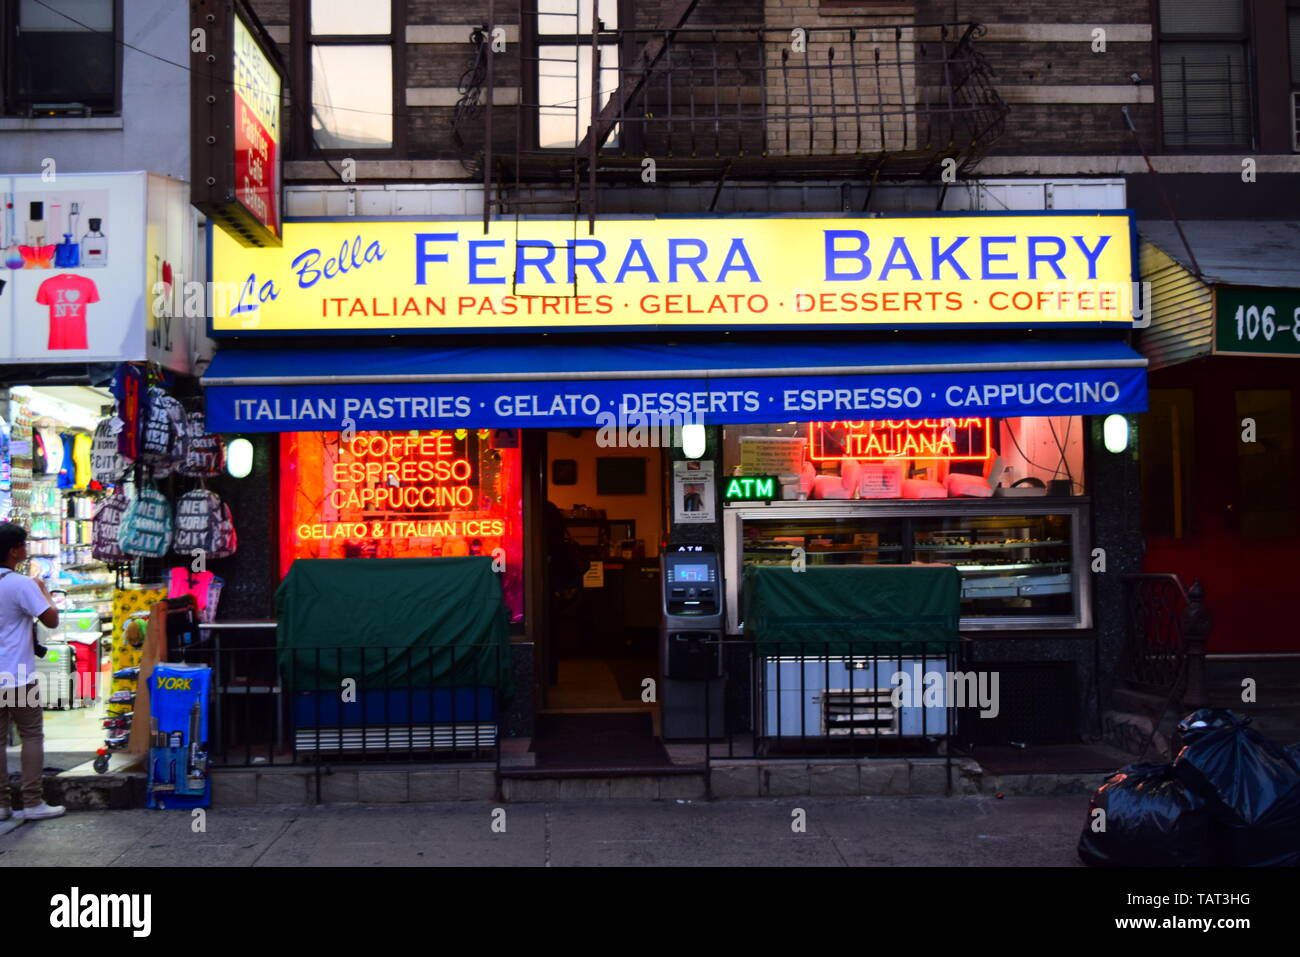 little italy new york city - famous italian bakery.may 2018 Stock Photo